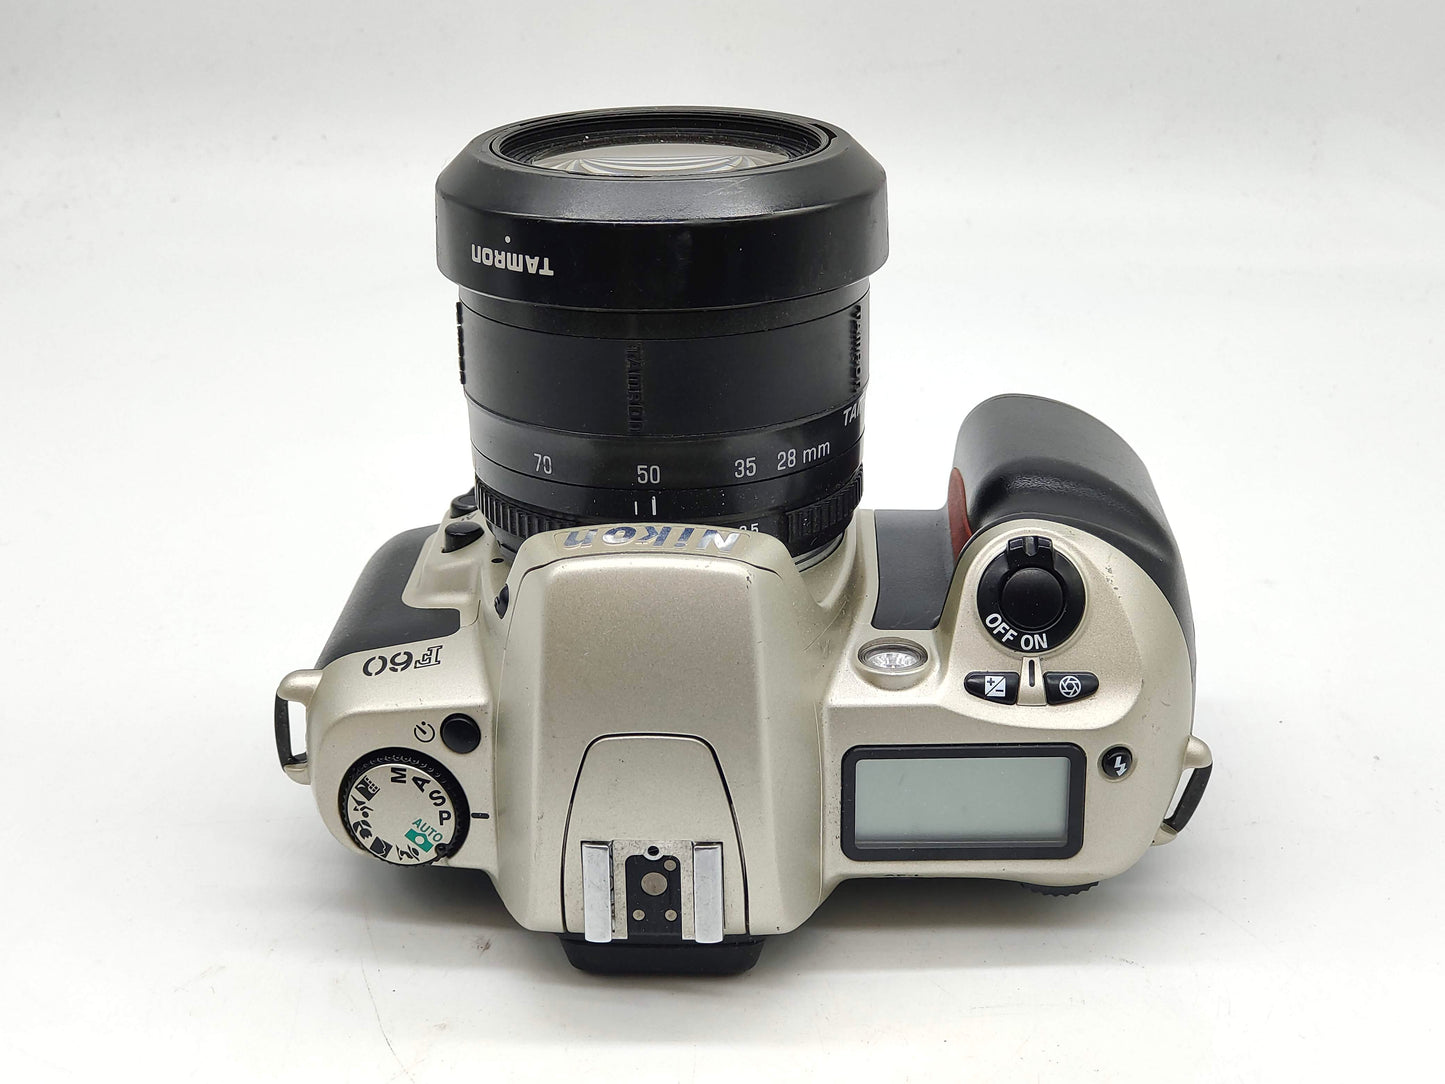 Nikon F60 + zoom lens SLR film camera kit